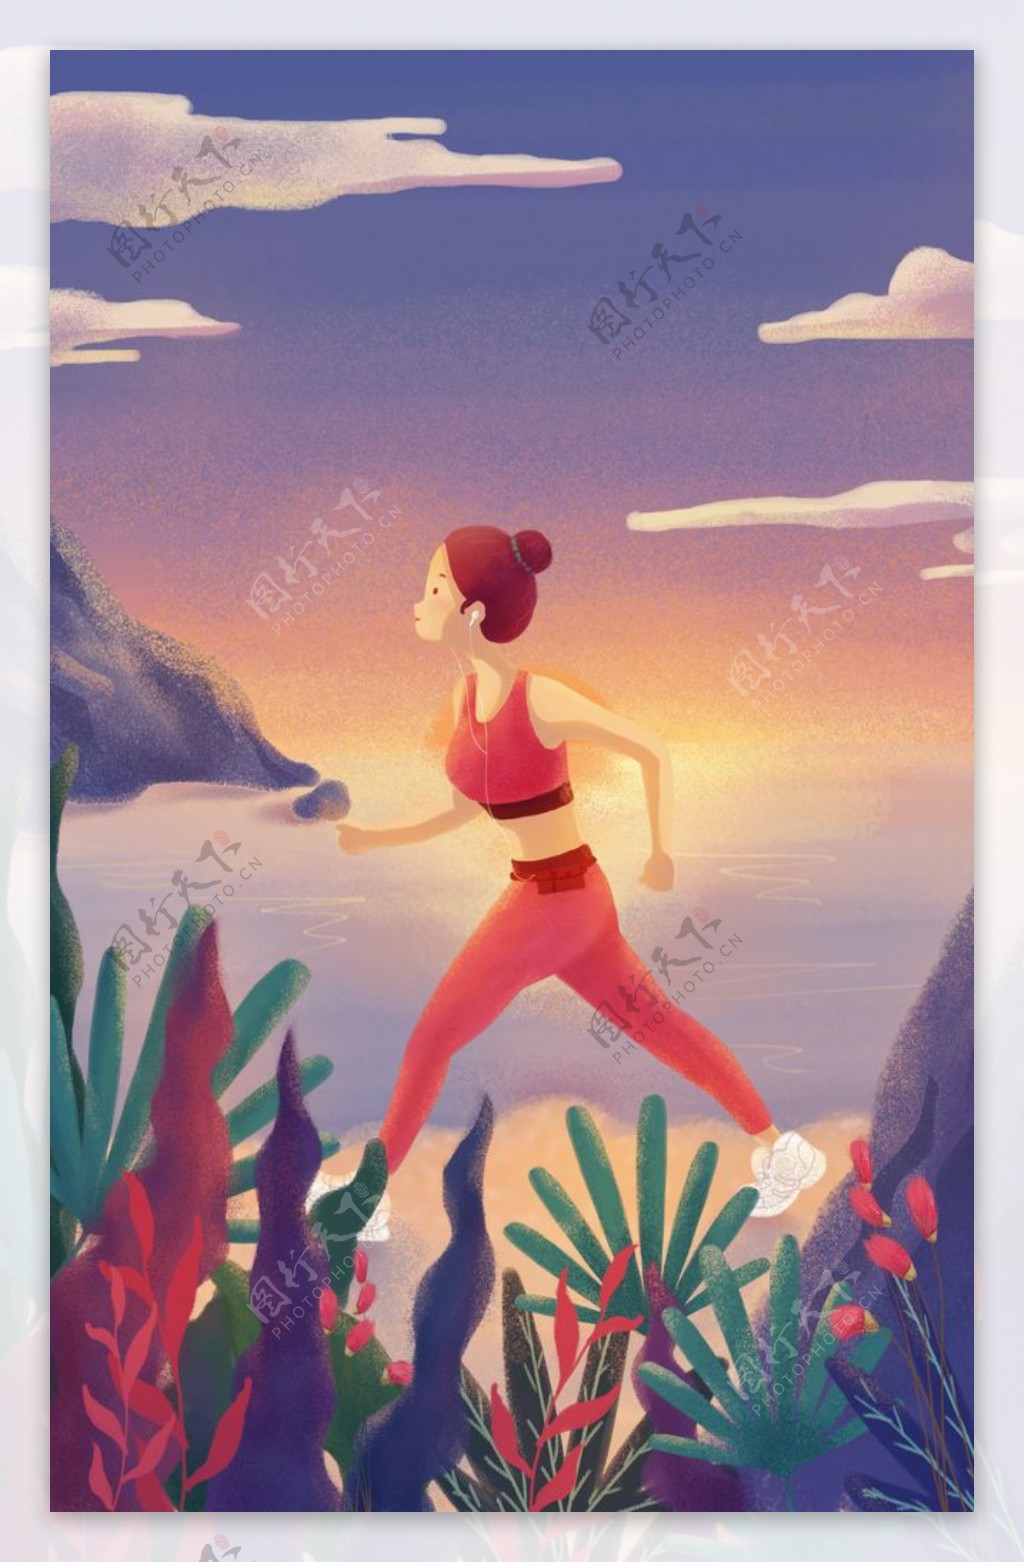 奔跑健身人物插画卡通背景素材